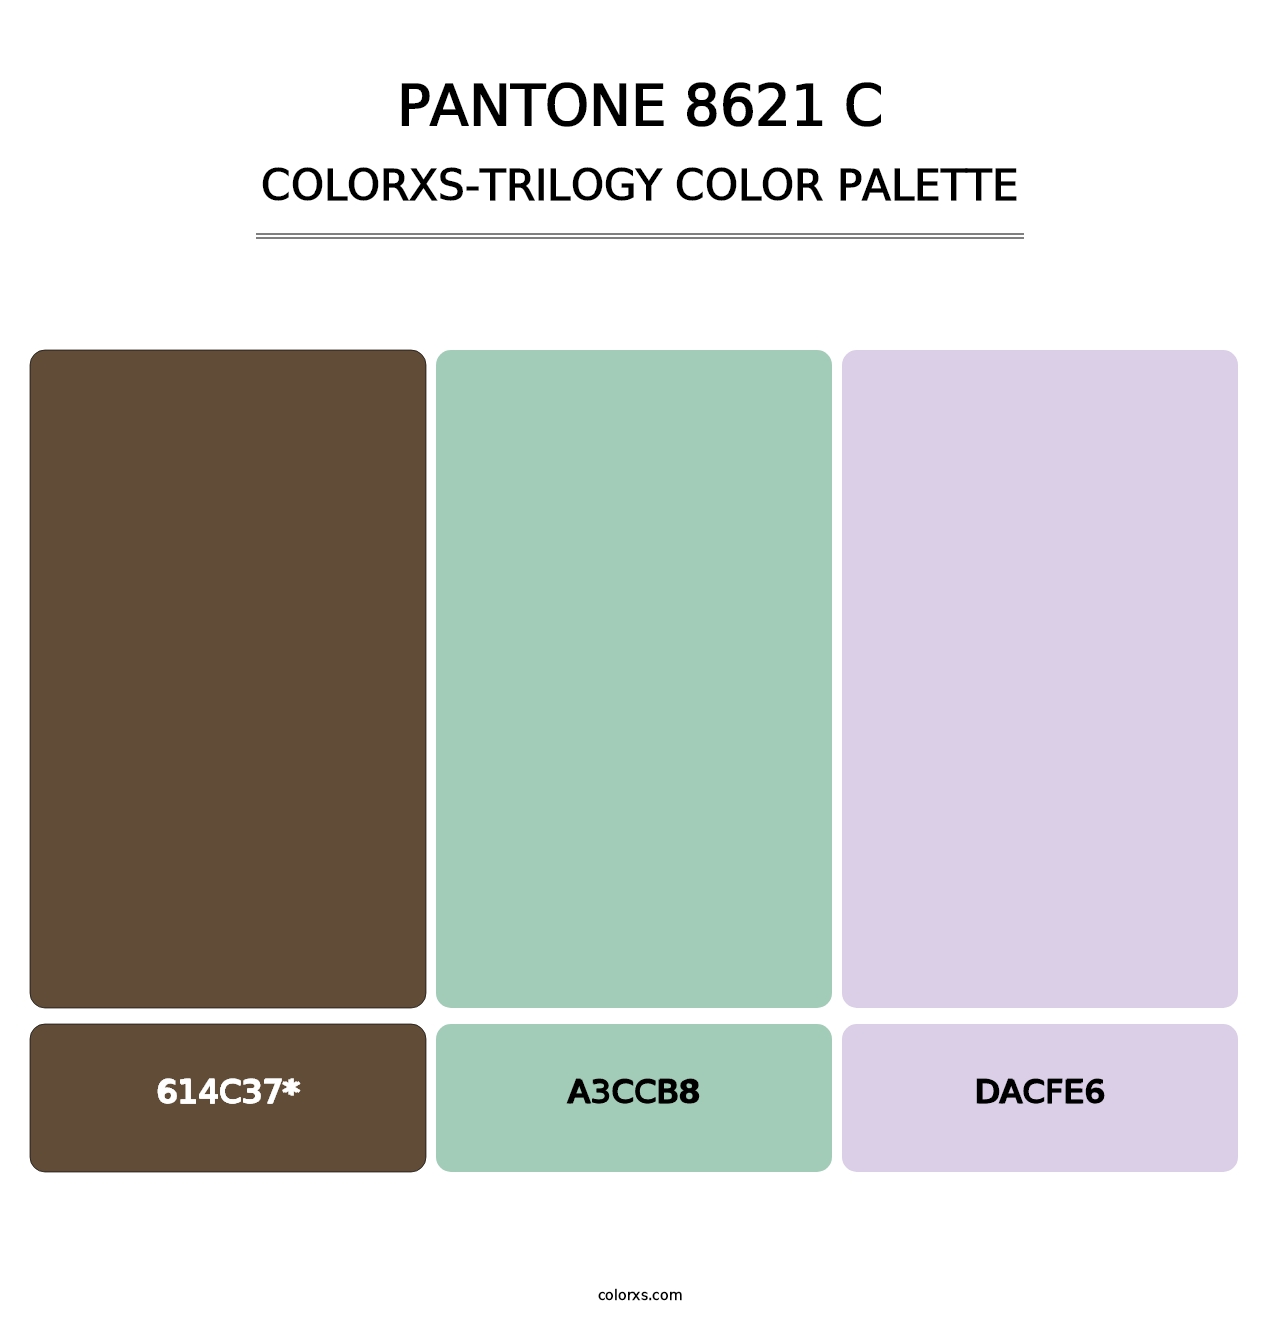 PANTONE 8621 C - Colorxs Trilogy Palette